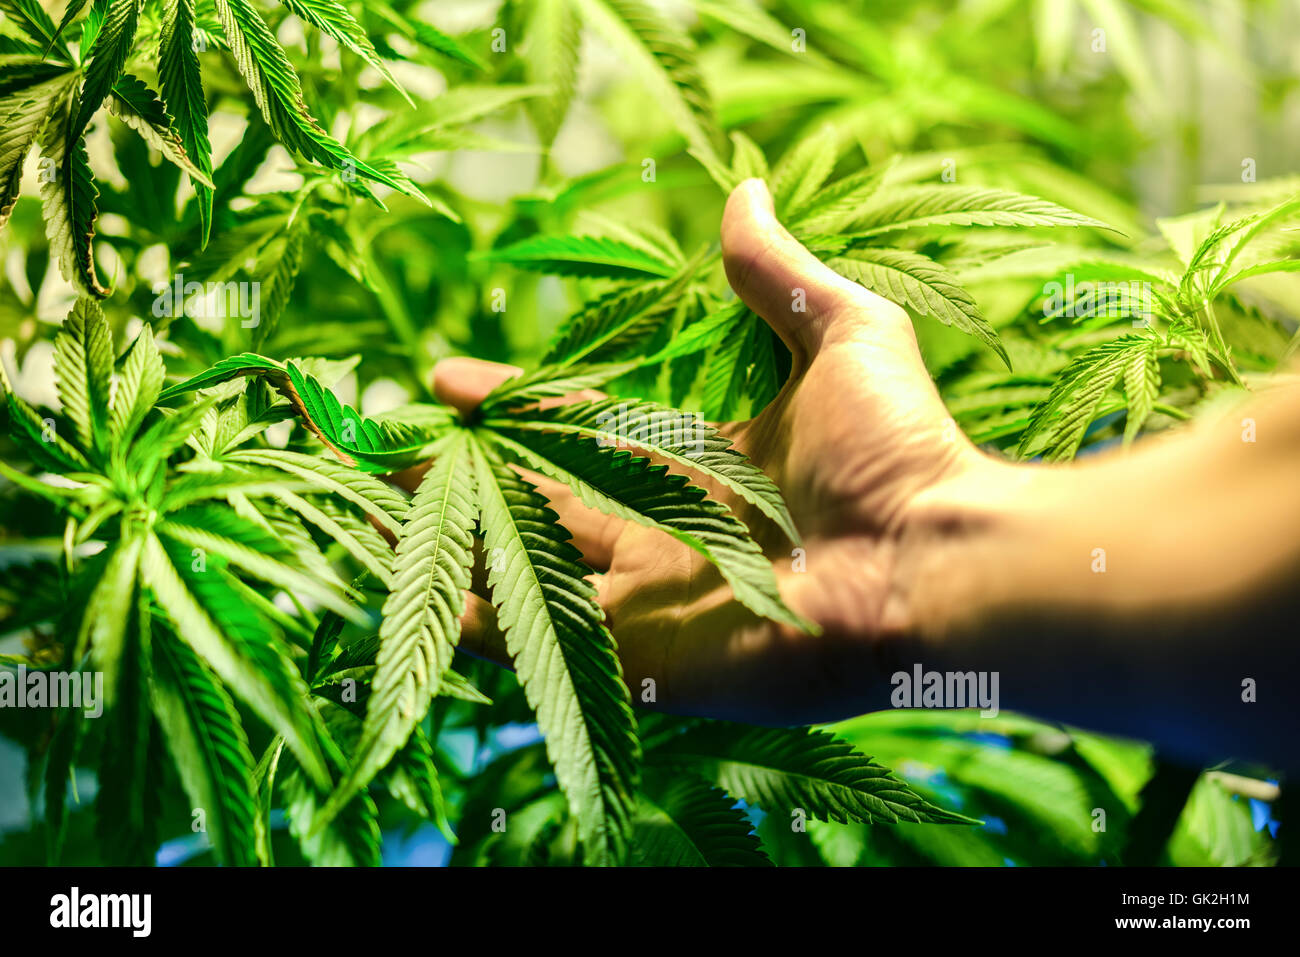 Plantation de cannabis en intérieur avec une main à l'avant-plan Banque D'Images